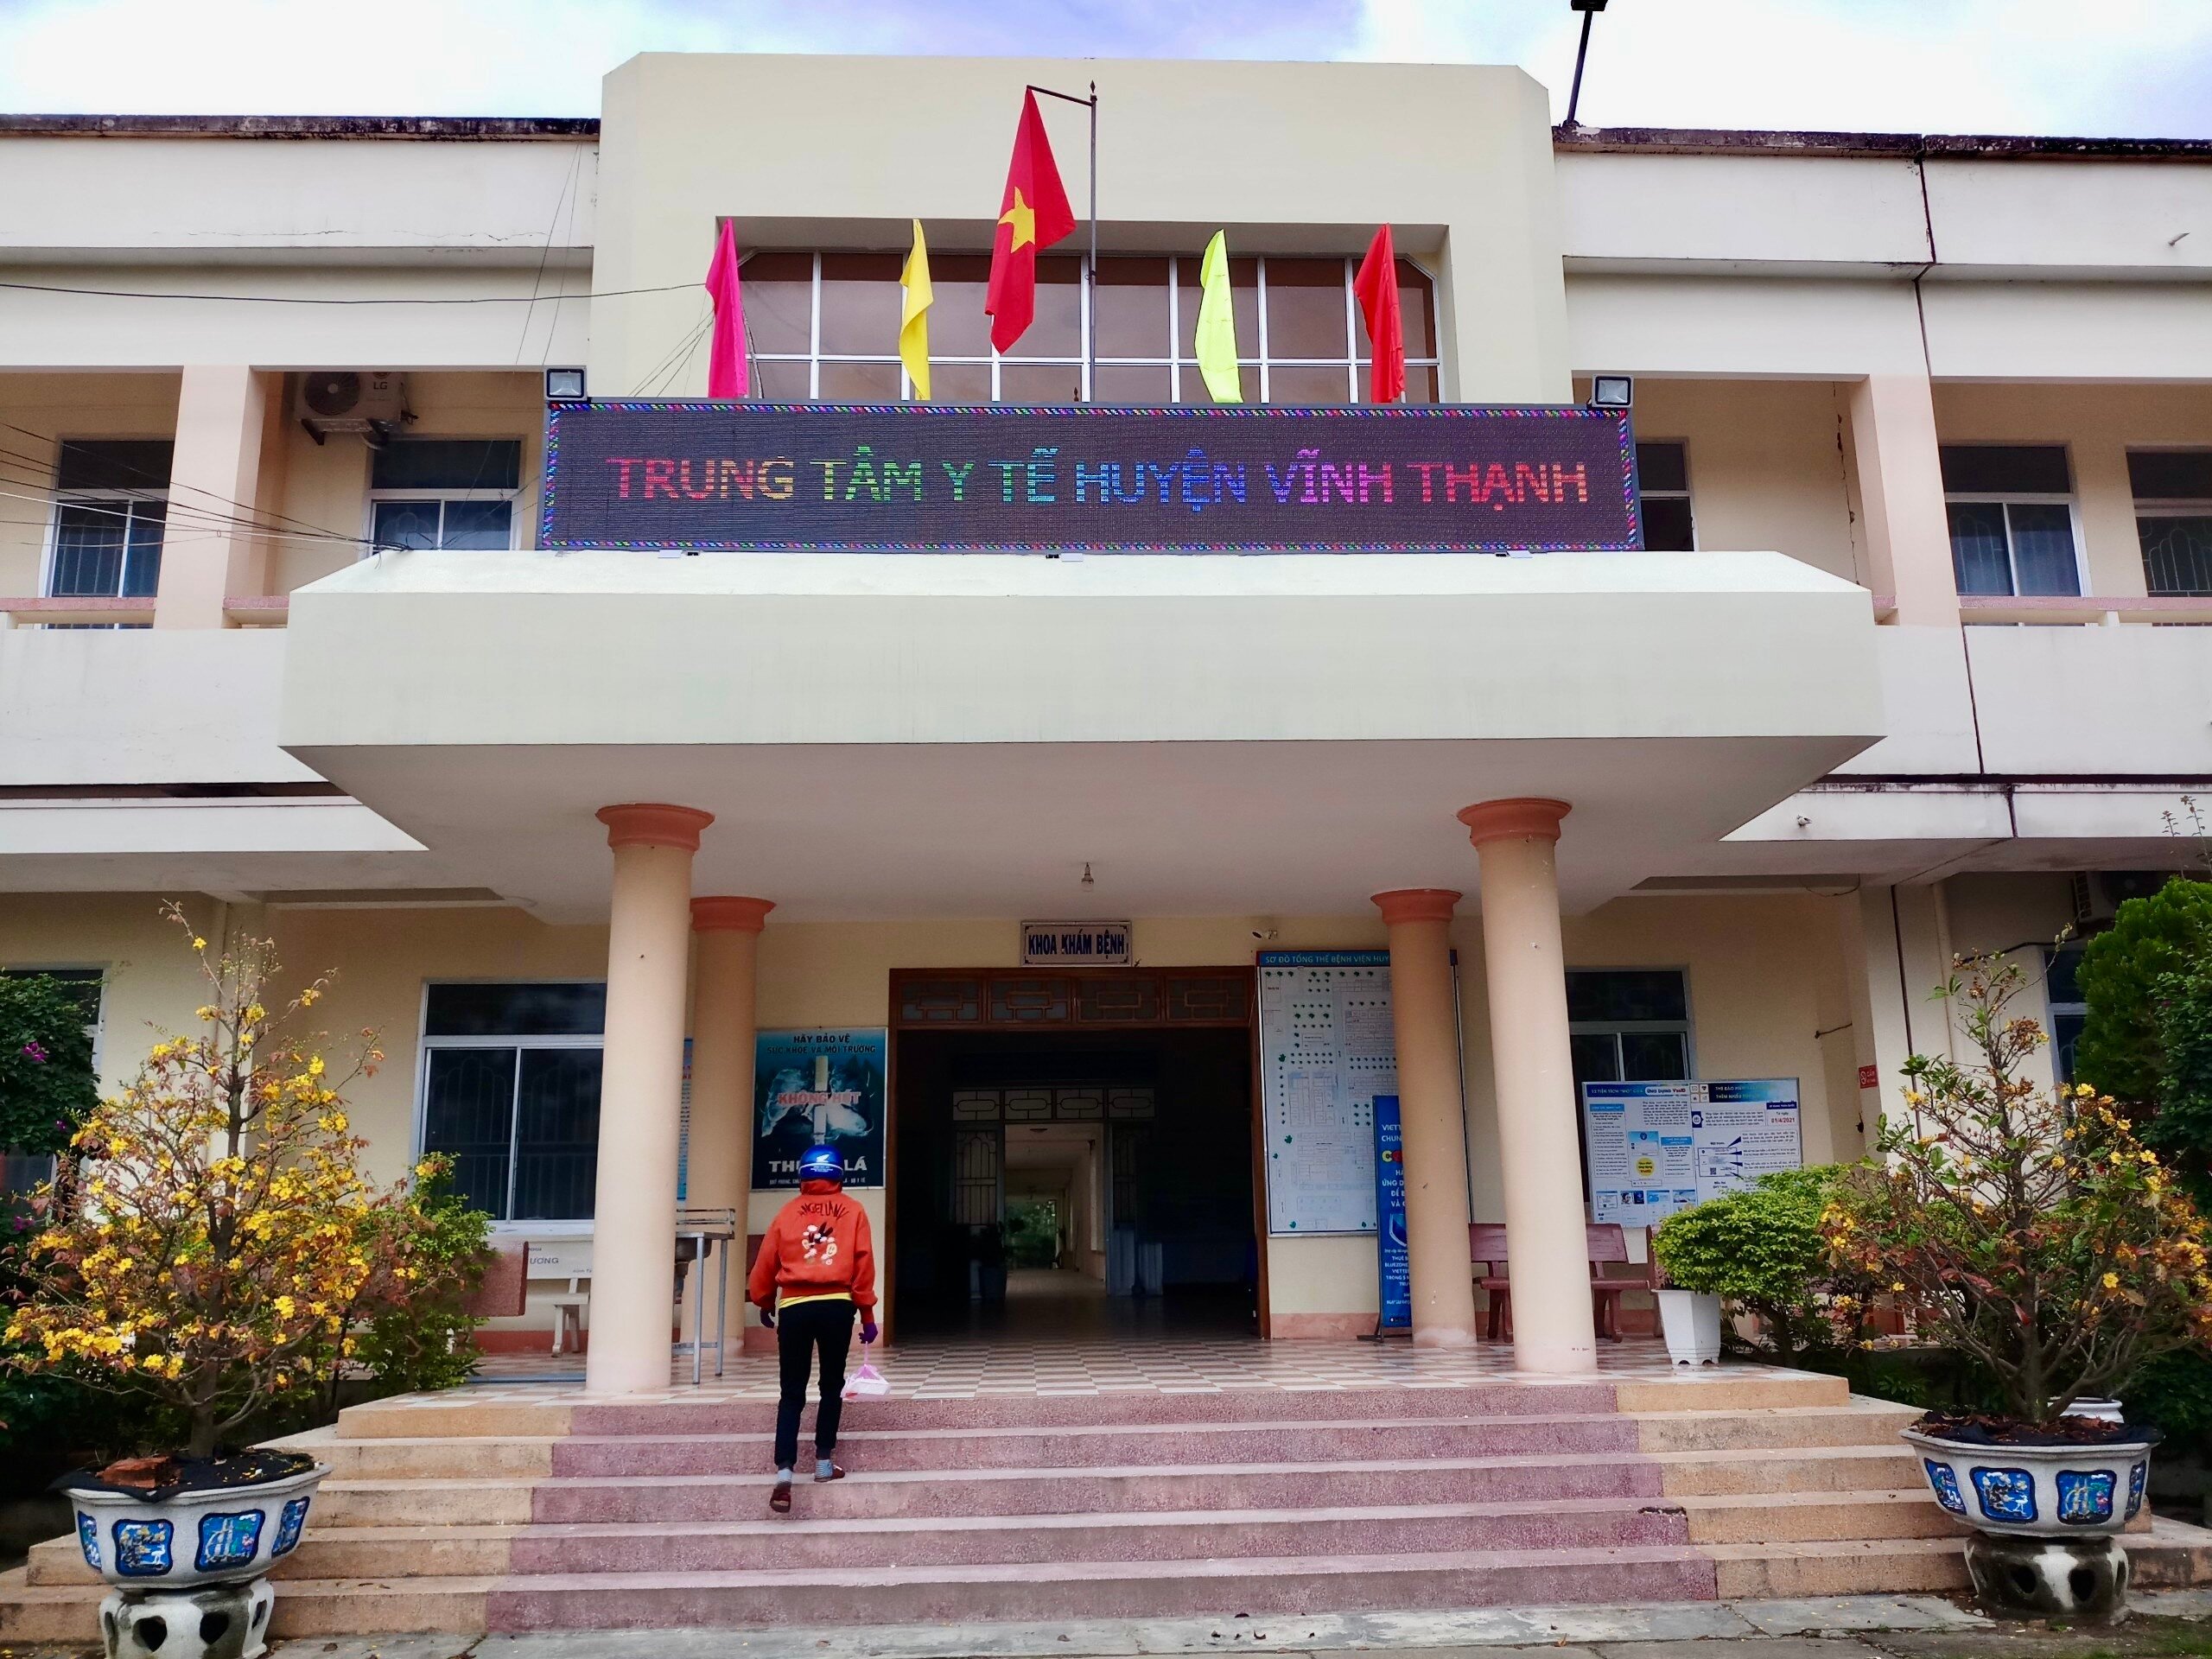 Trung tâm y tế huyện Vĩnh Thạnh (Bình Định), nơi xảy ra vụ việc.